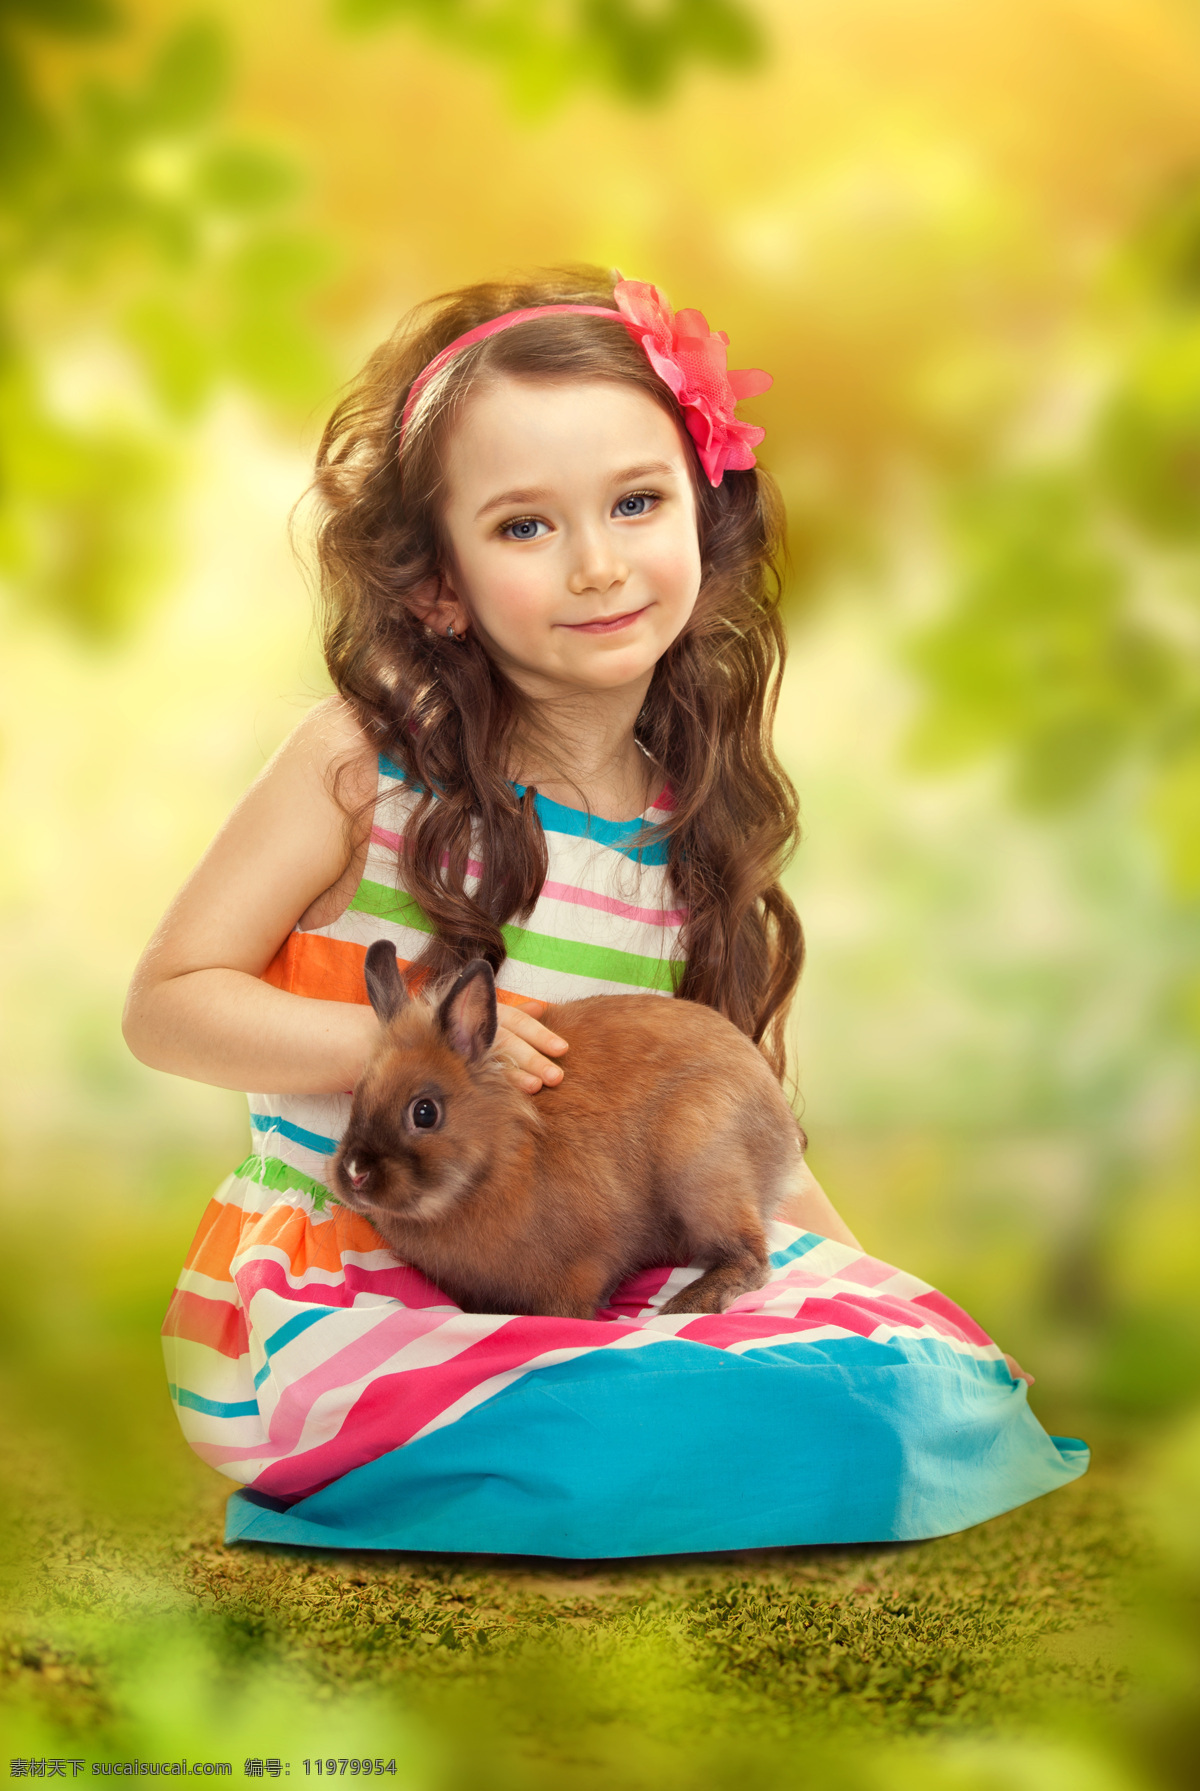 抱 兔子 女孩 微笑 梦幻背景 抱着 儿童 孩子 儿童图片 人物图片